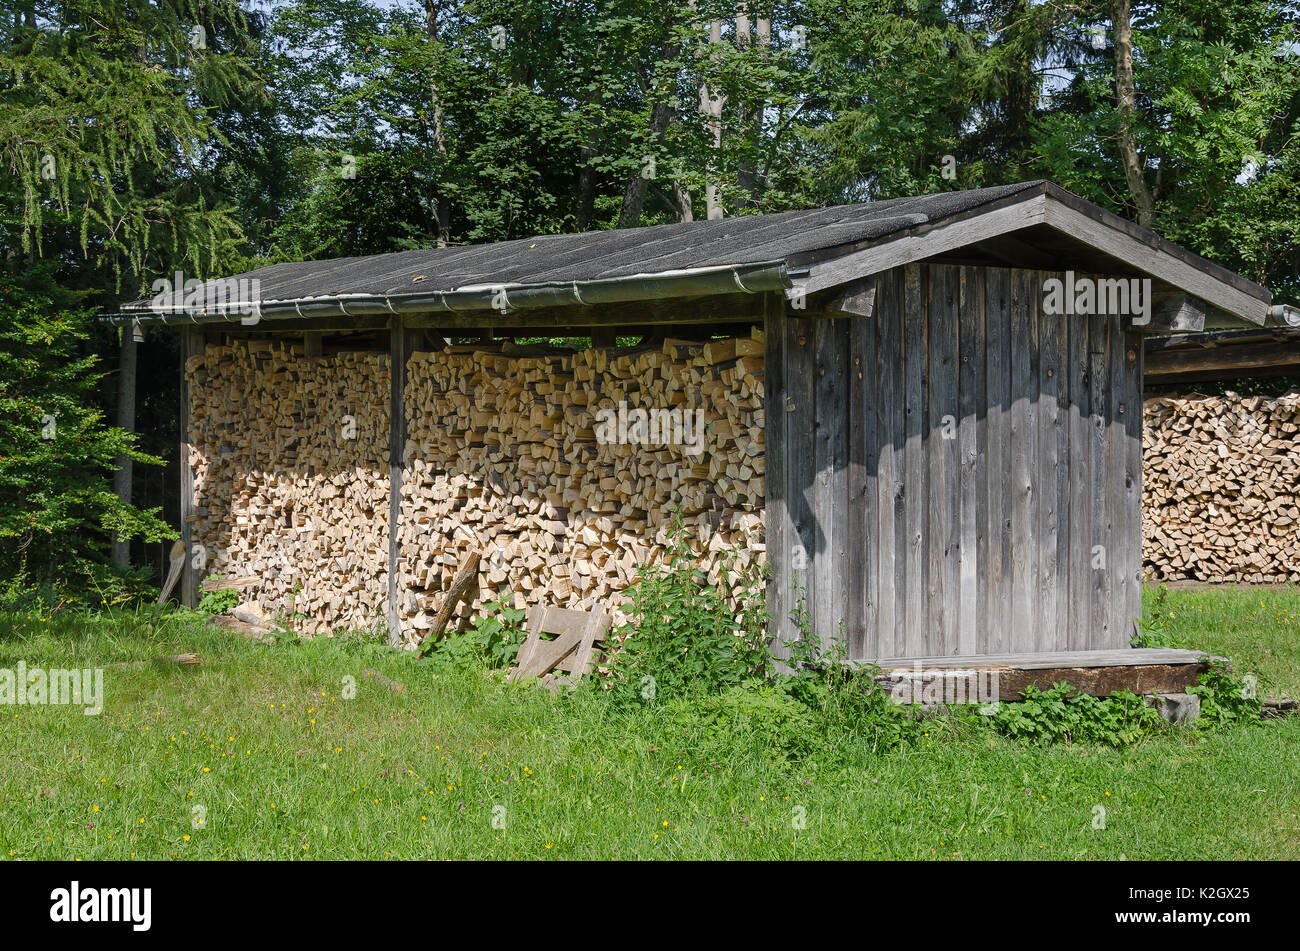 Verwitterte Holzhütte mit gestapelten Brennholz auf einer Wiese am Waldrand. Einfache überdachte Struktur, Brennholz verwendet, um den Inhalt vor Feuchtigkeit zu schützen. Stockfoto